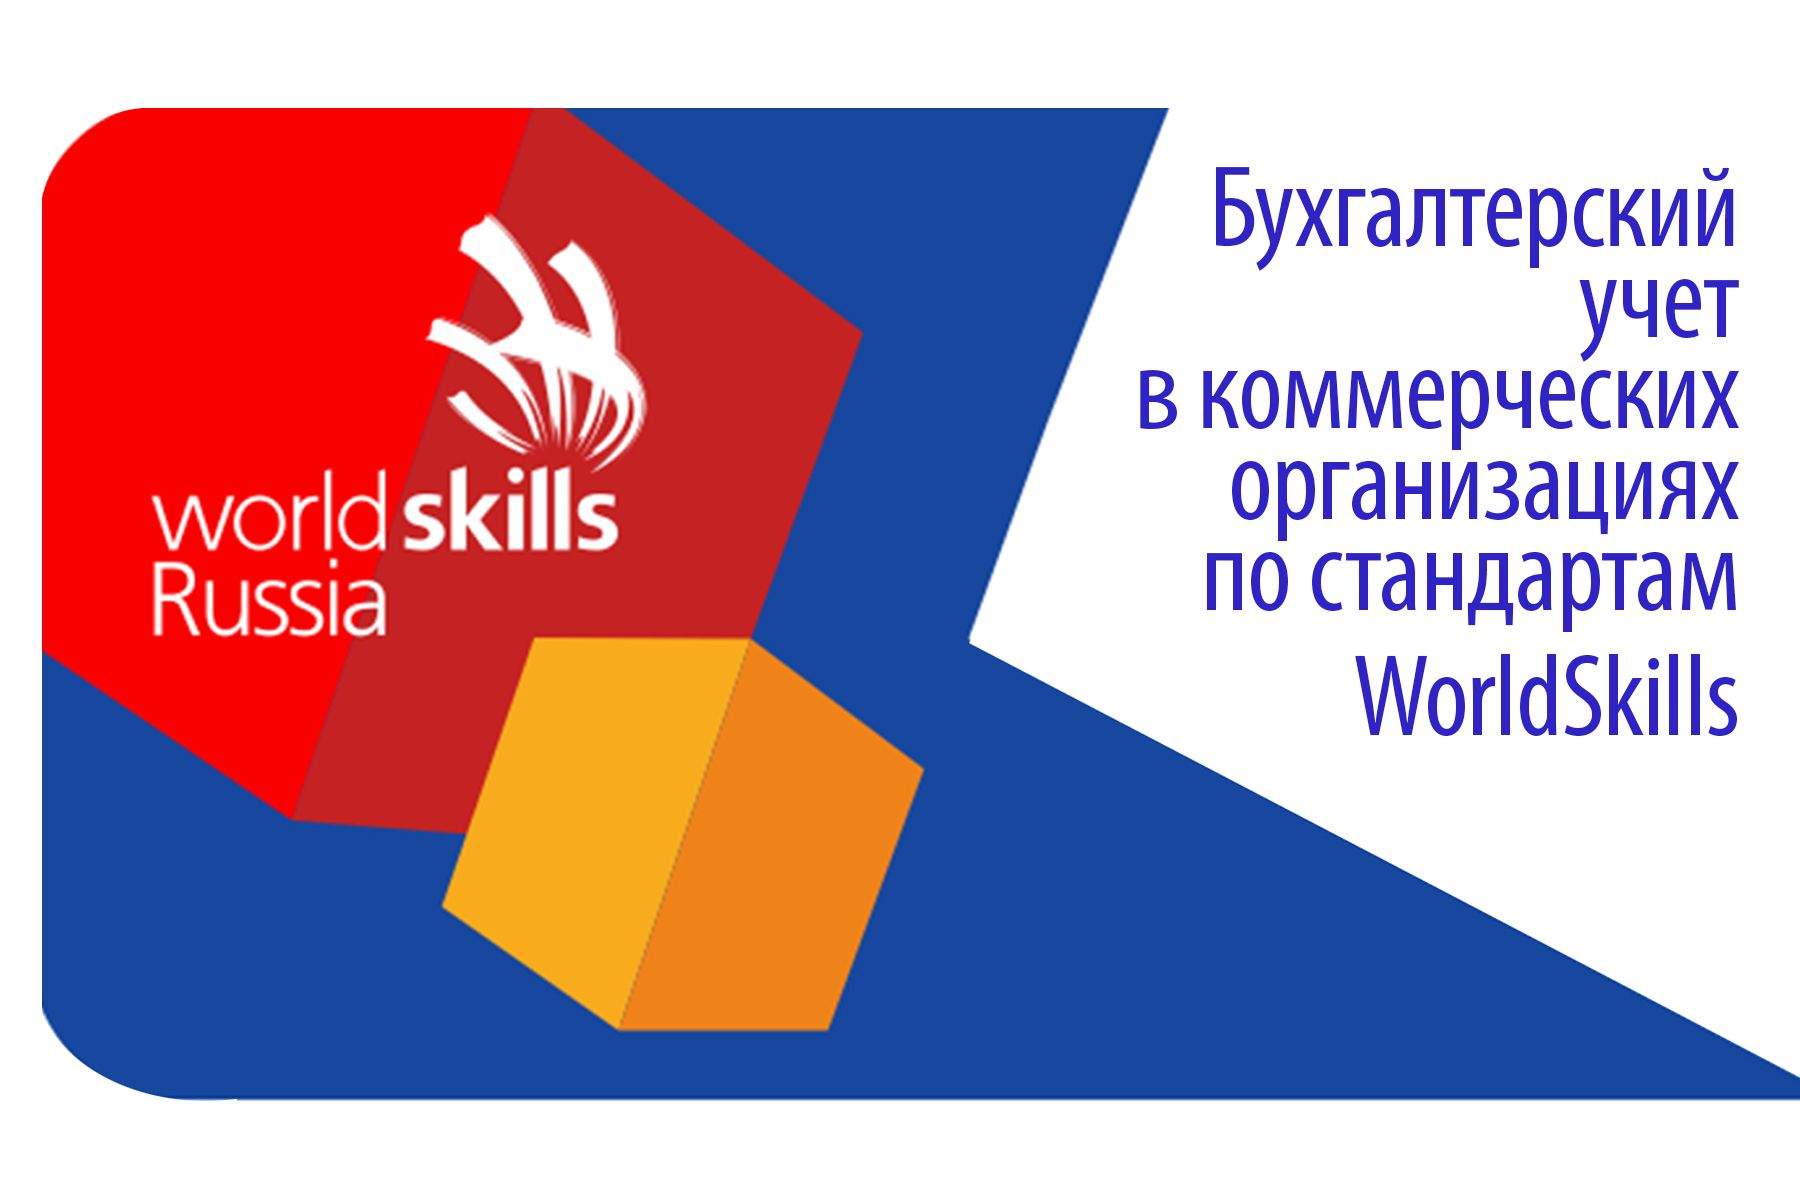 Кафедра экономики и управления ИМБЭиУ ВГУЭС реализует программу «Бухгалтерский учет в коммерческих организациях» по стандартам WorldSkills